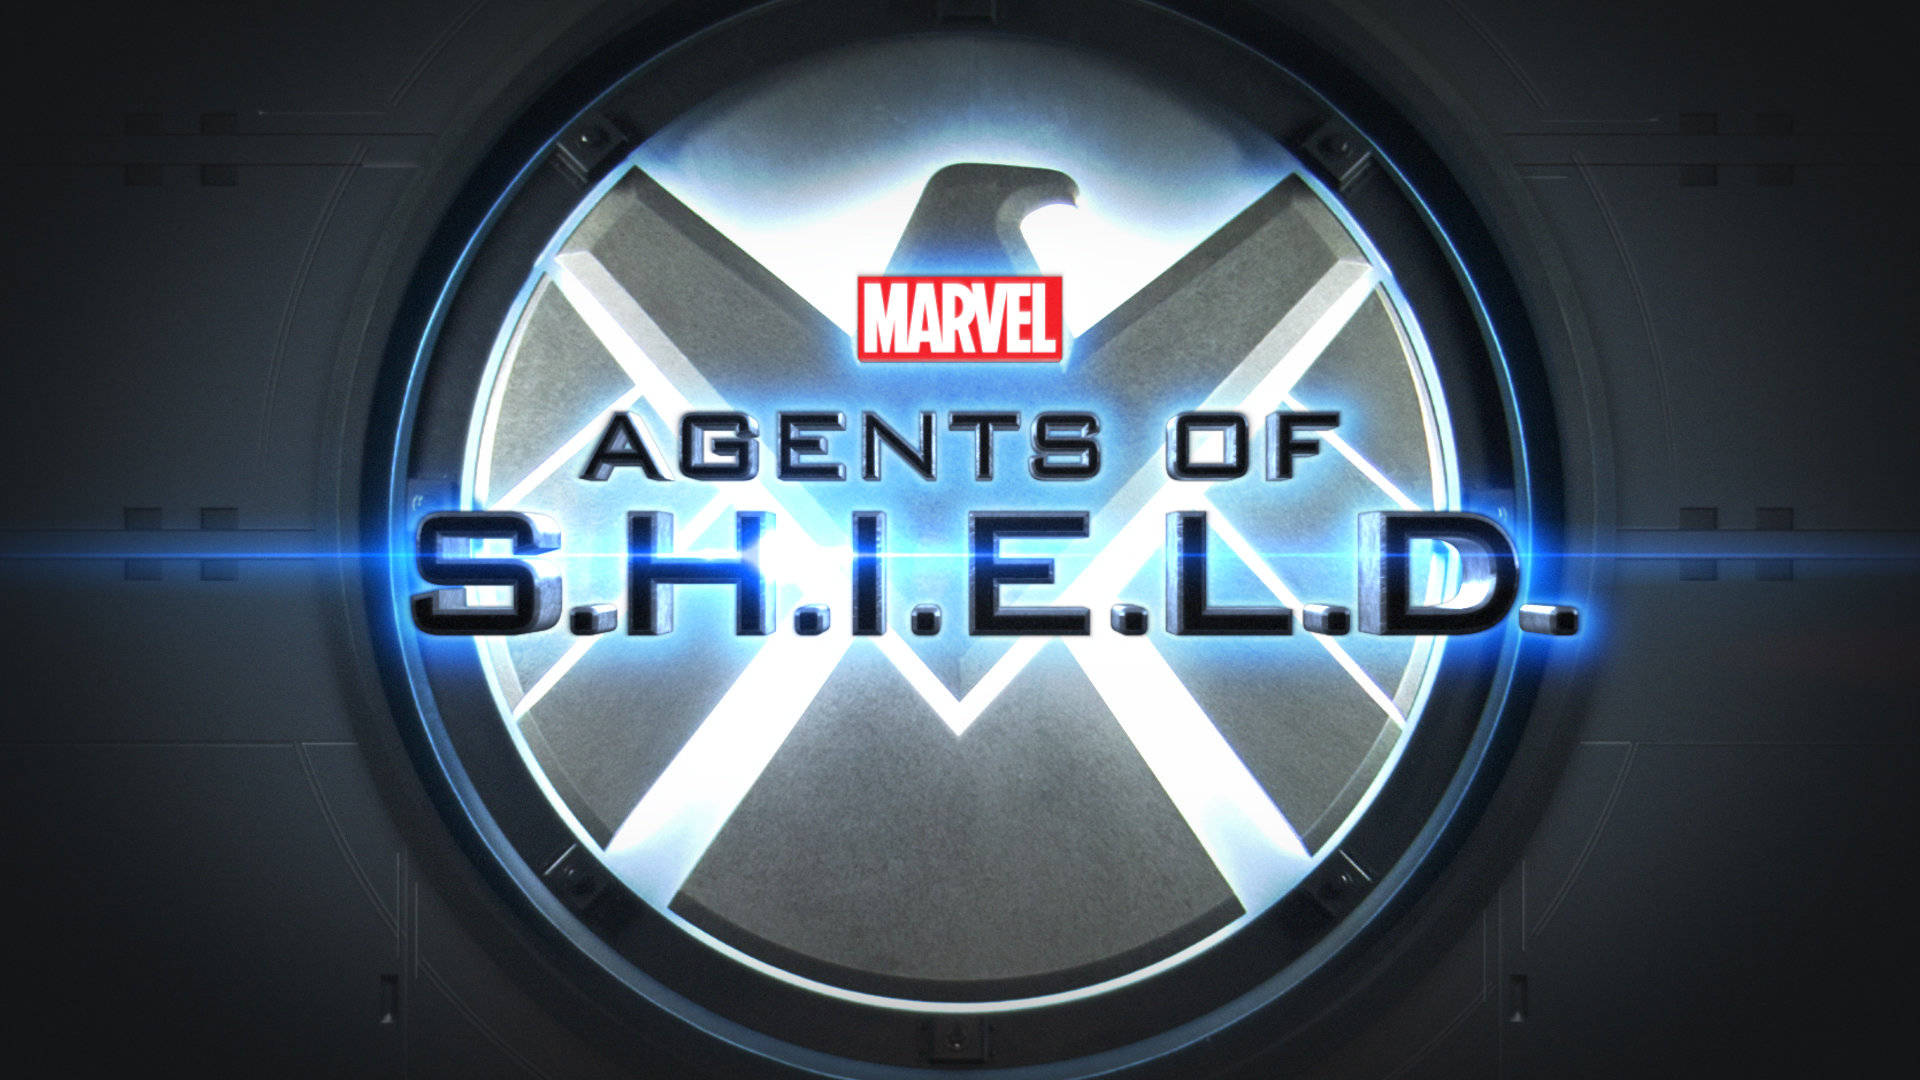 Atractivologotipo De Marvel Agents Of Shield En Arte Digital. Fondo de pantalla